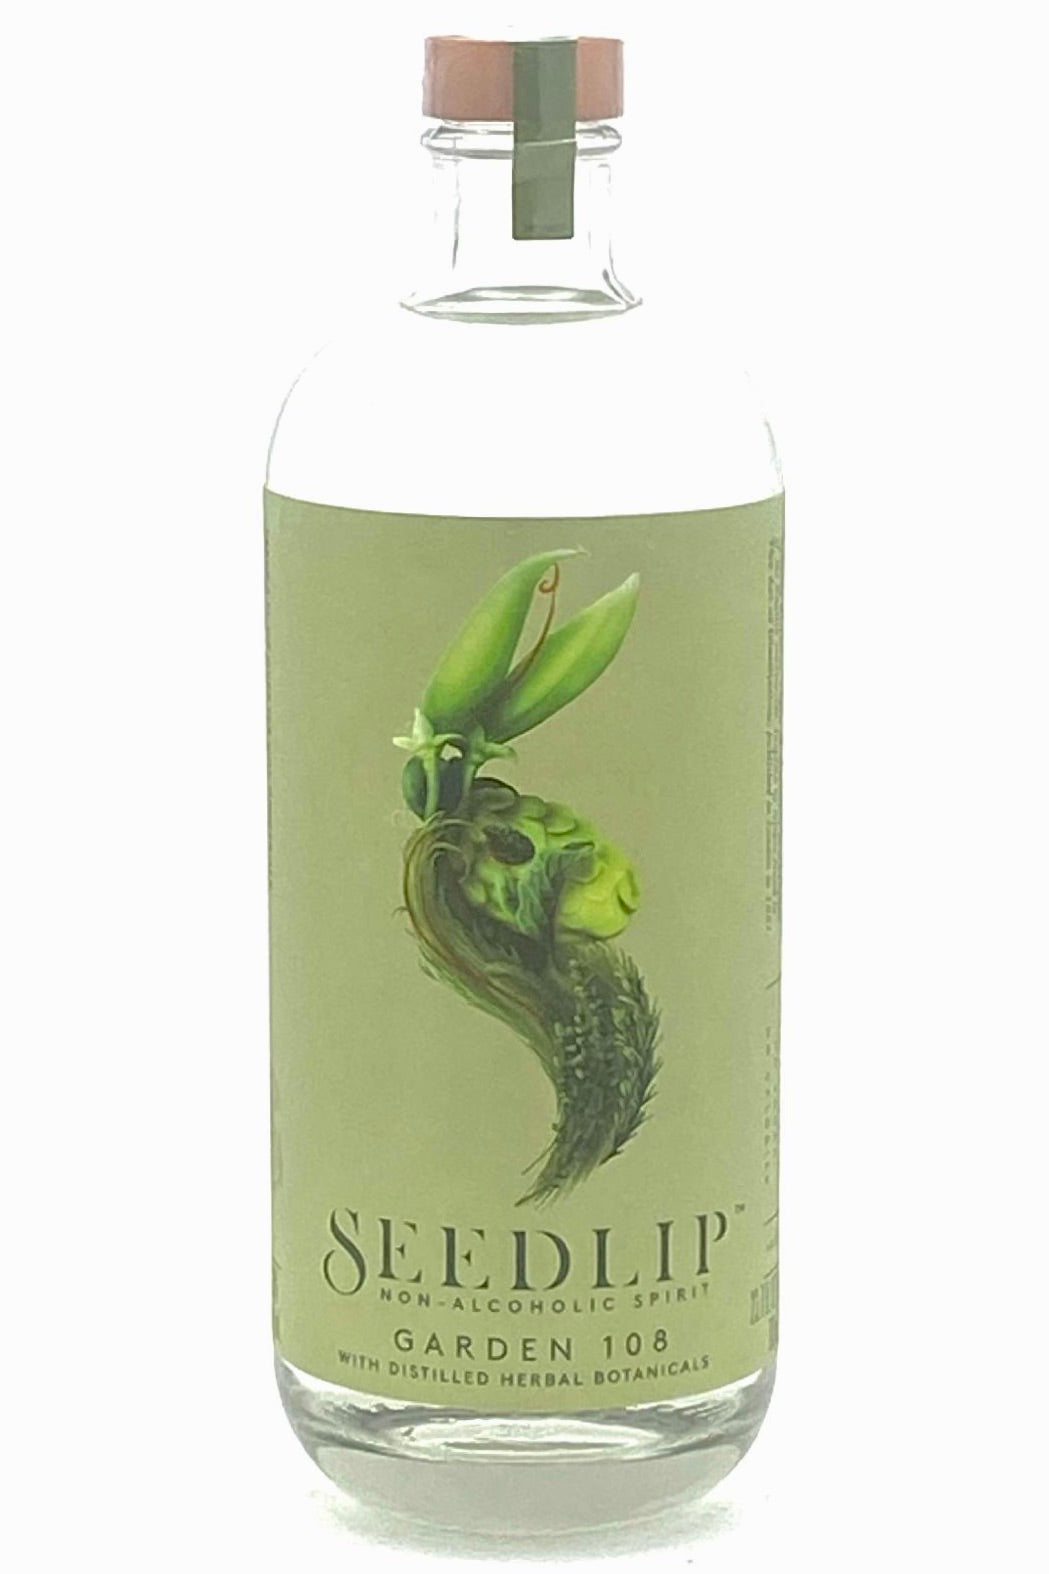 Seedlip Garden 108 Nonalcoholic Spirit 700 ml